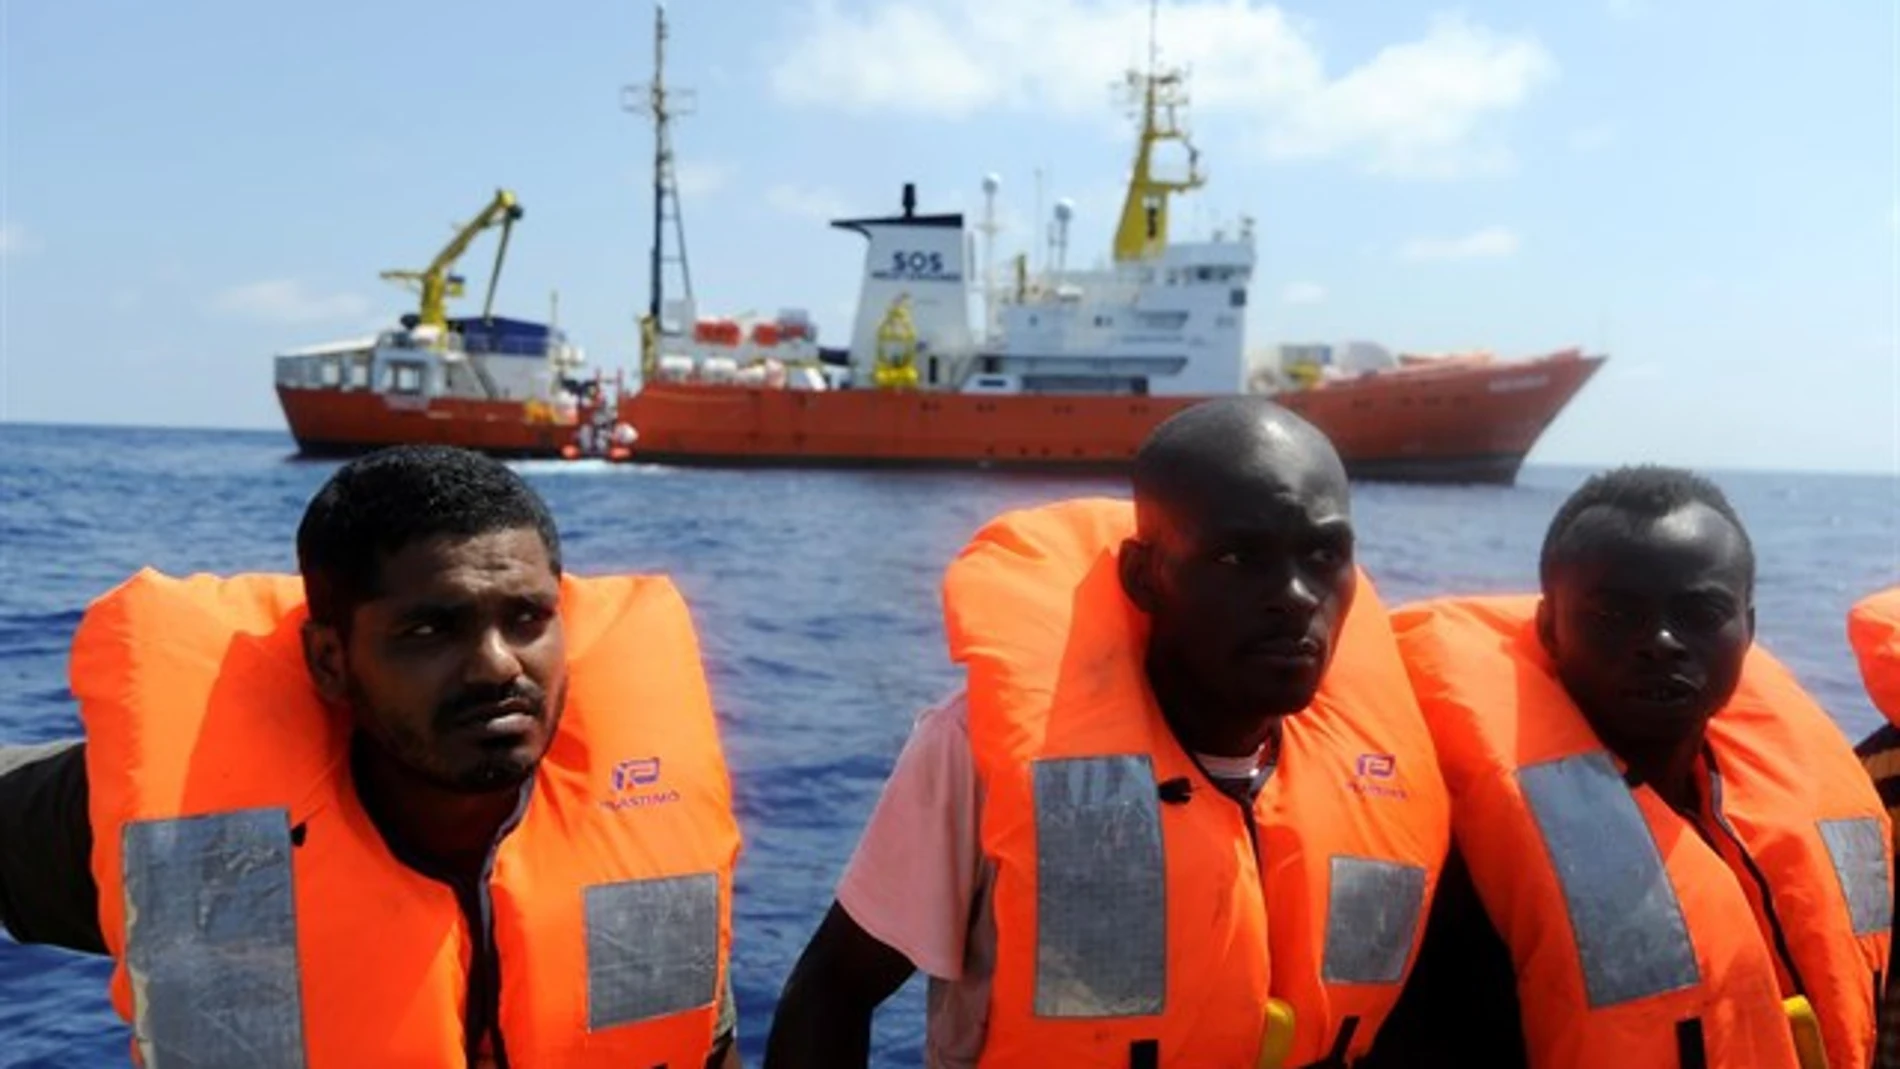 Imagen de archivo de migrantes rescatados en el Mediterráneo